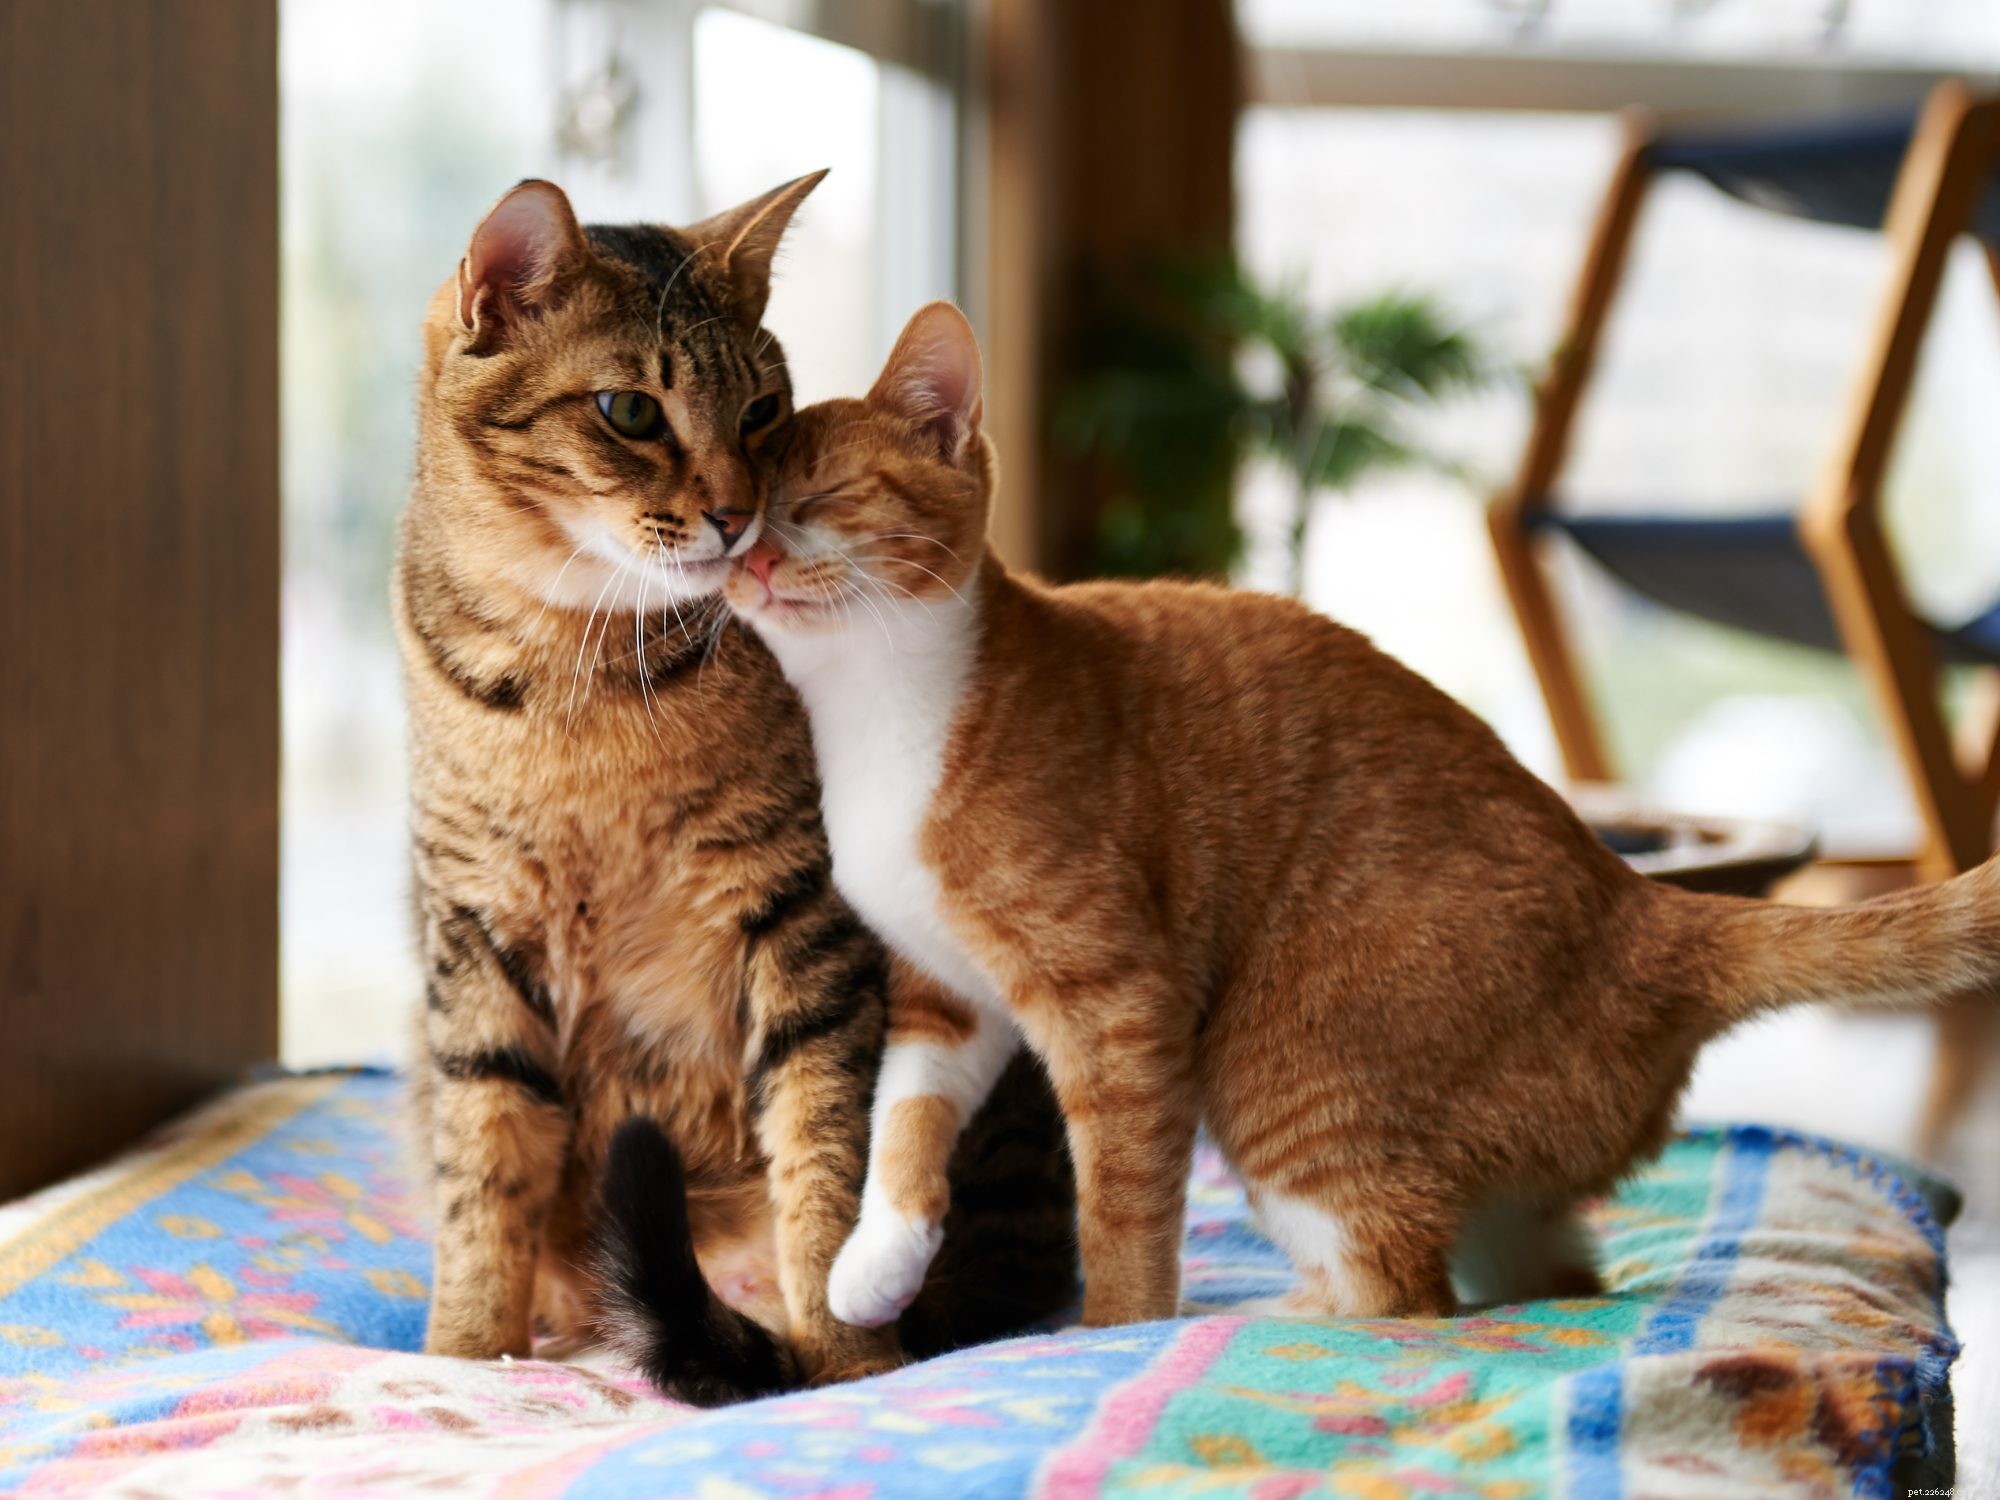 Hai più di un gatto? Una nuova ricerca suggerisce che potrebbero conoscersi reciprocamente i nomi